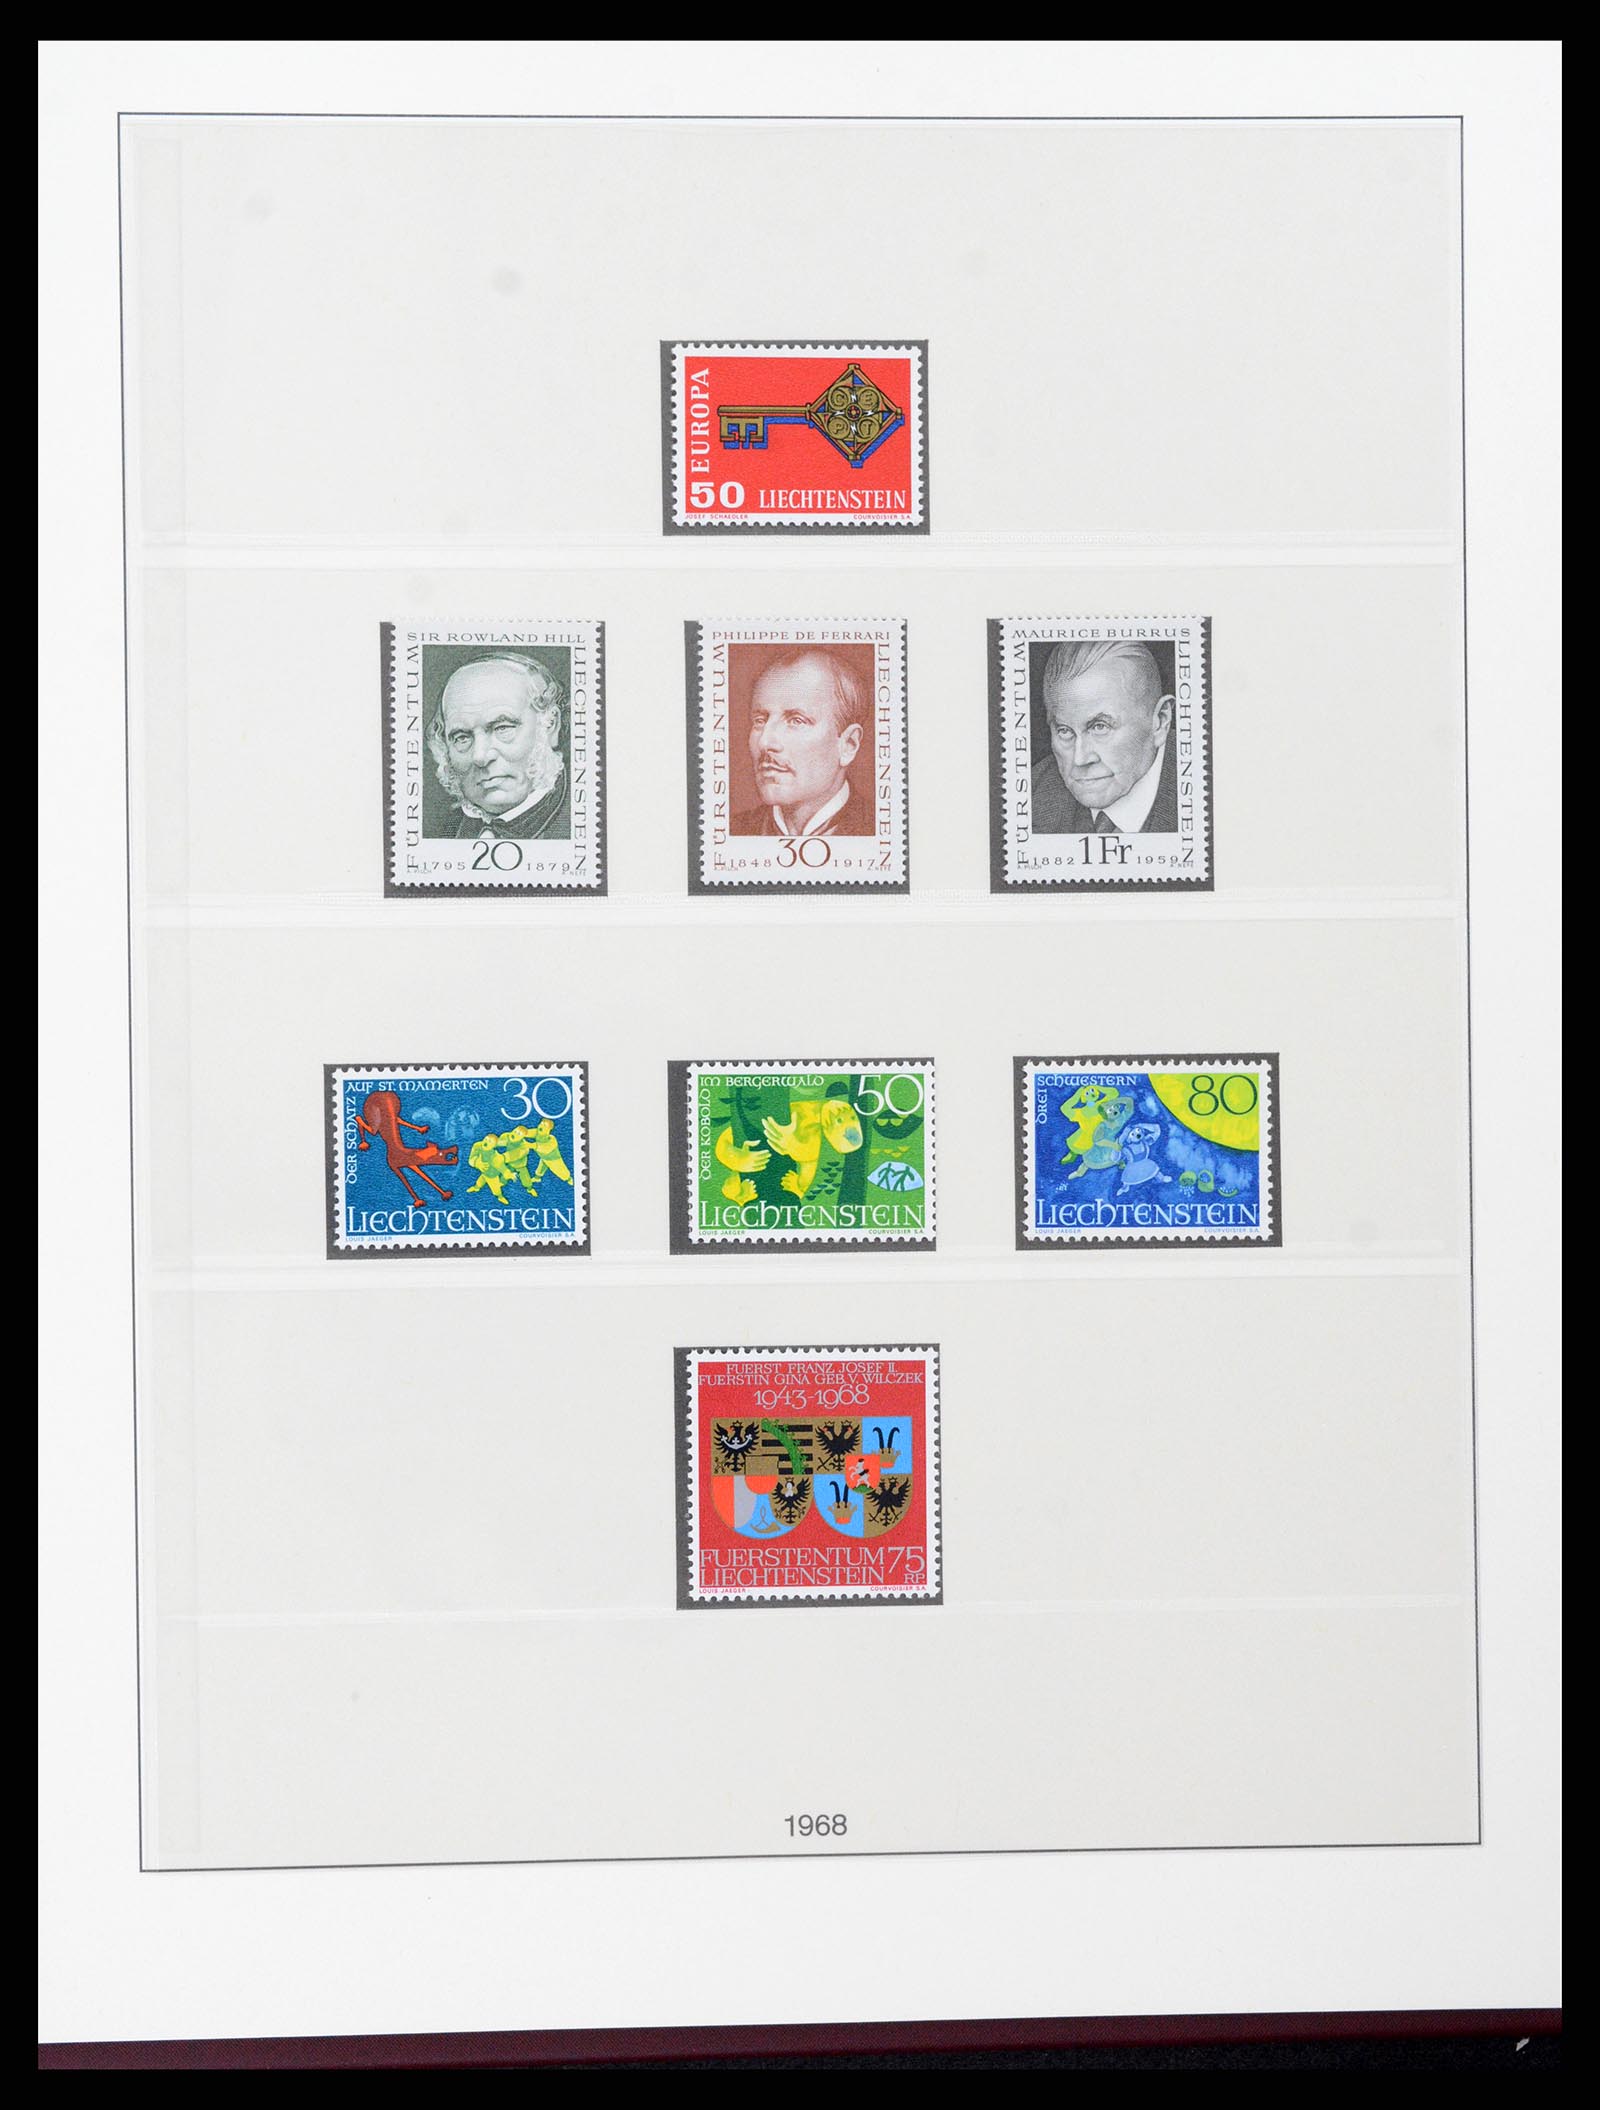 37293 045 - Stamp collection 37293 Liechtenstein 1912-2003.